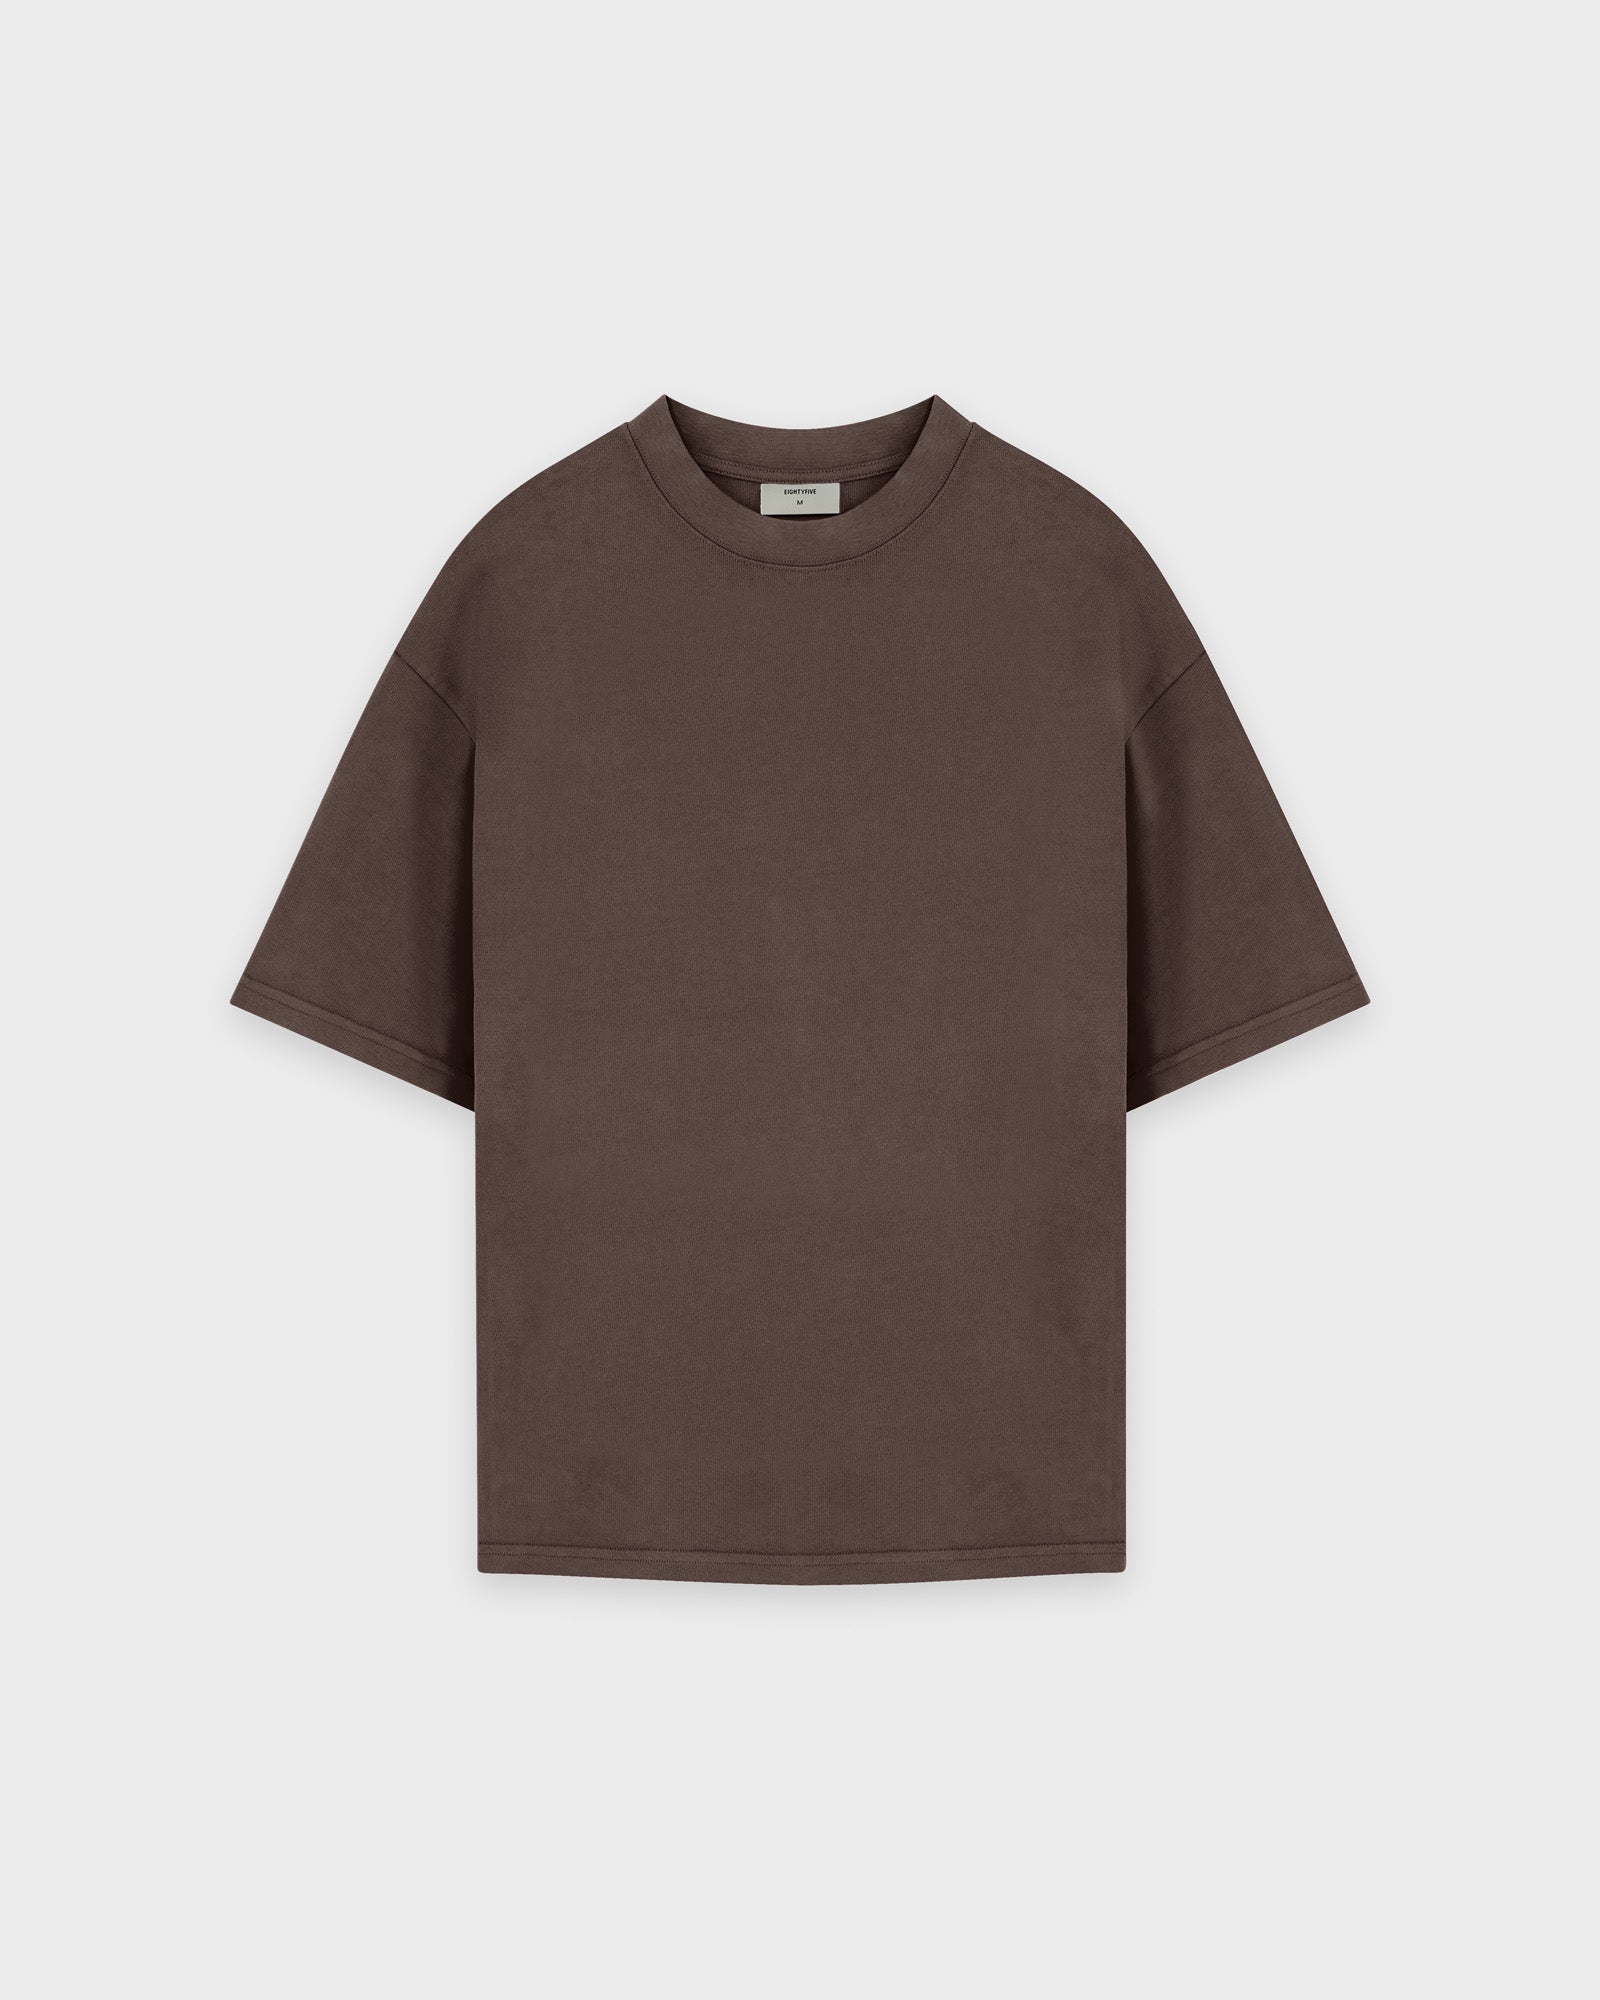 Heavy Chocolate Brown Basic T-Shirt